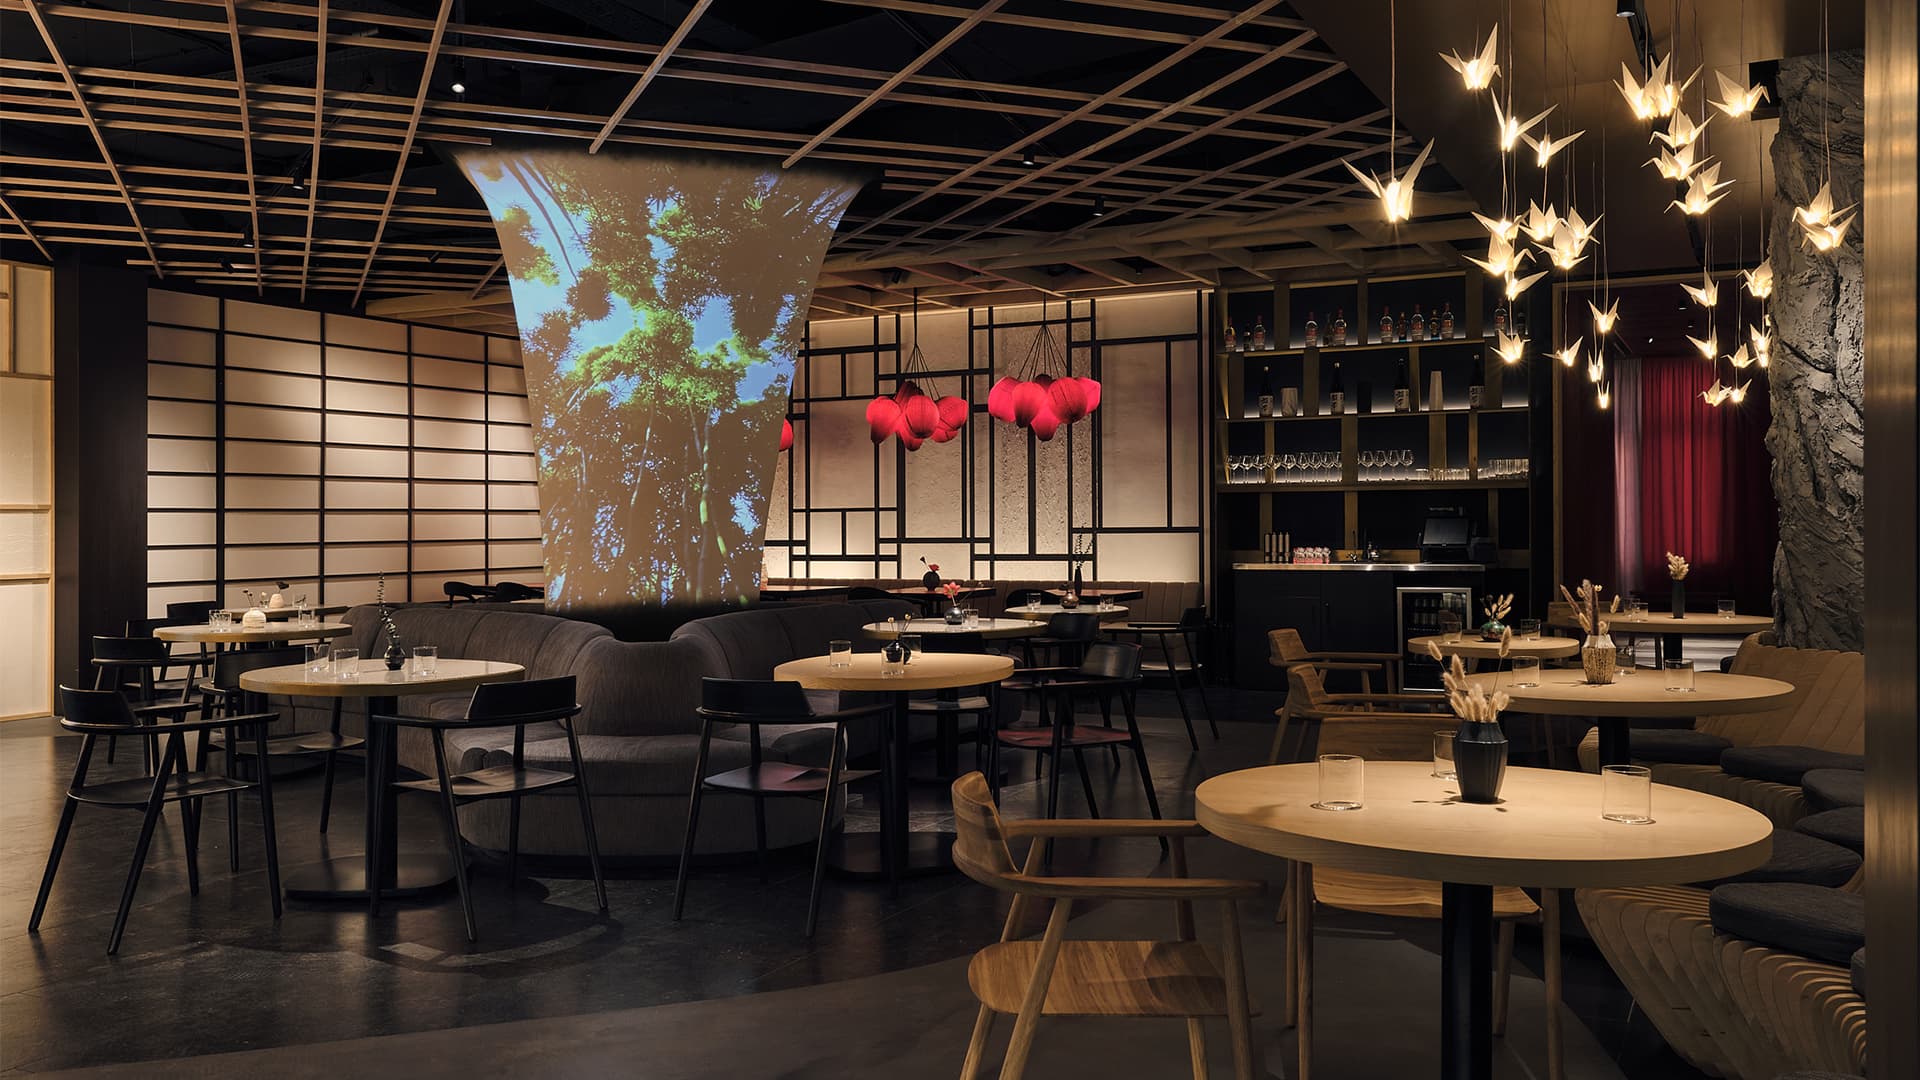 Пятьдесят текстур и покрытий в драматичном интерьере бара-ресторана – проект бюро Ideologist+ Architects и Юсуке Такахаси